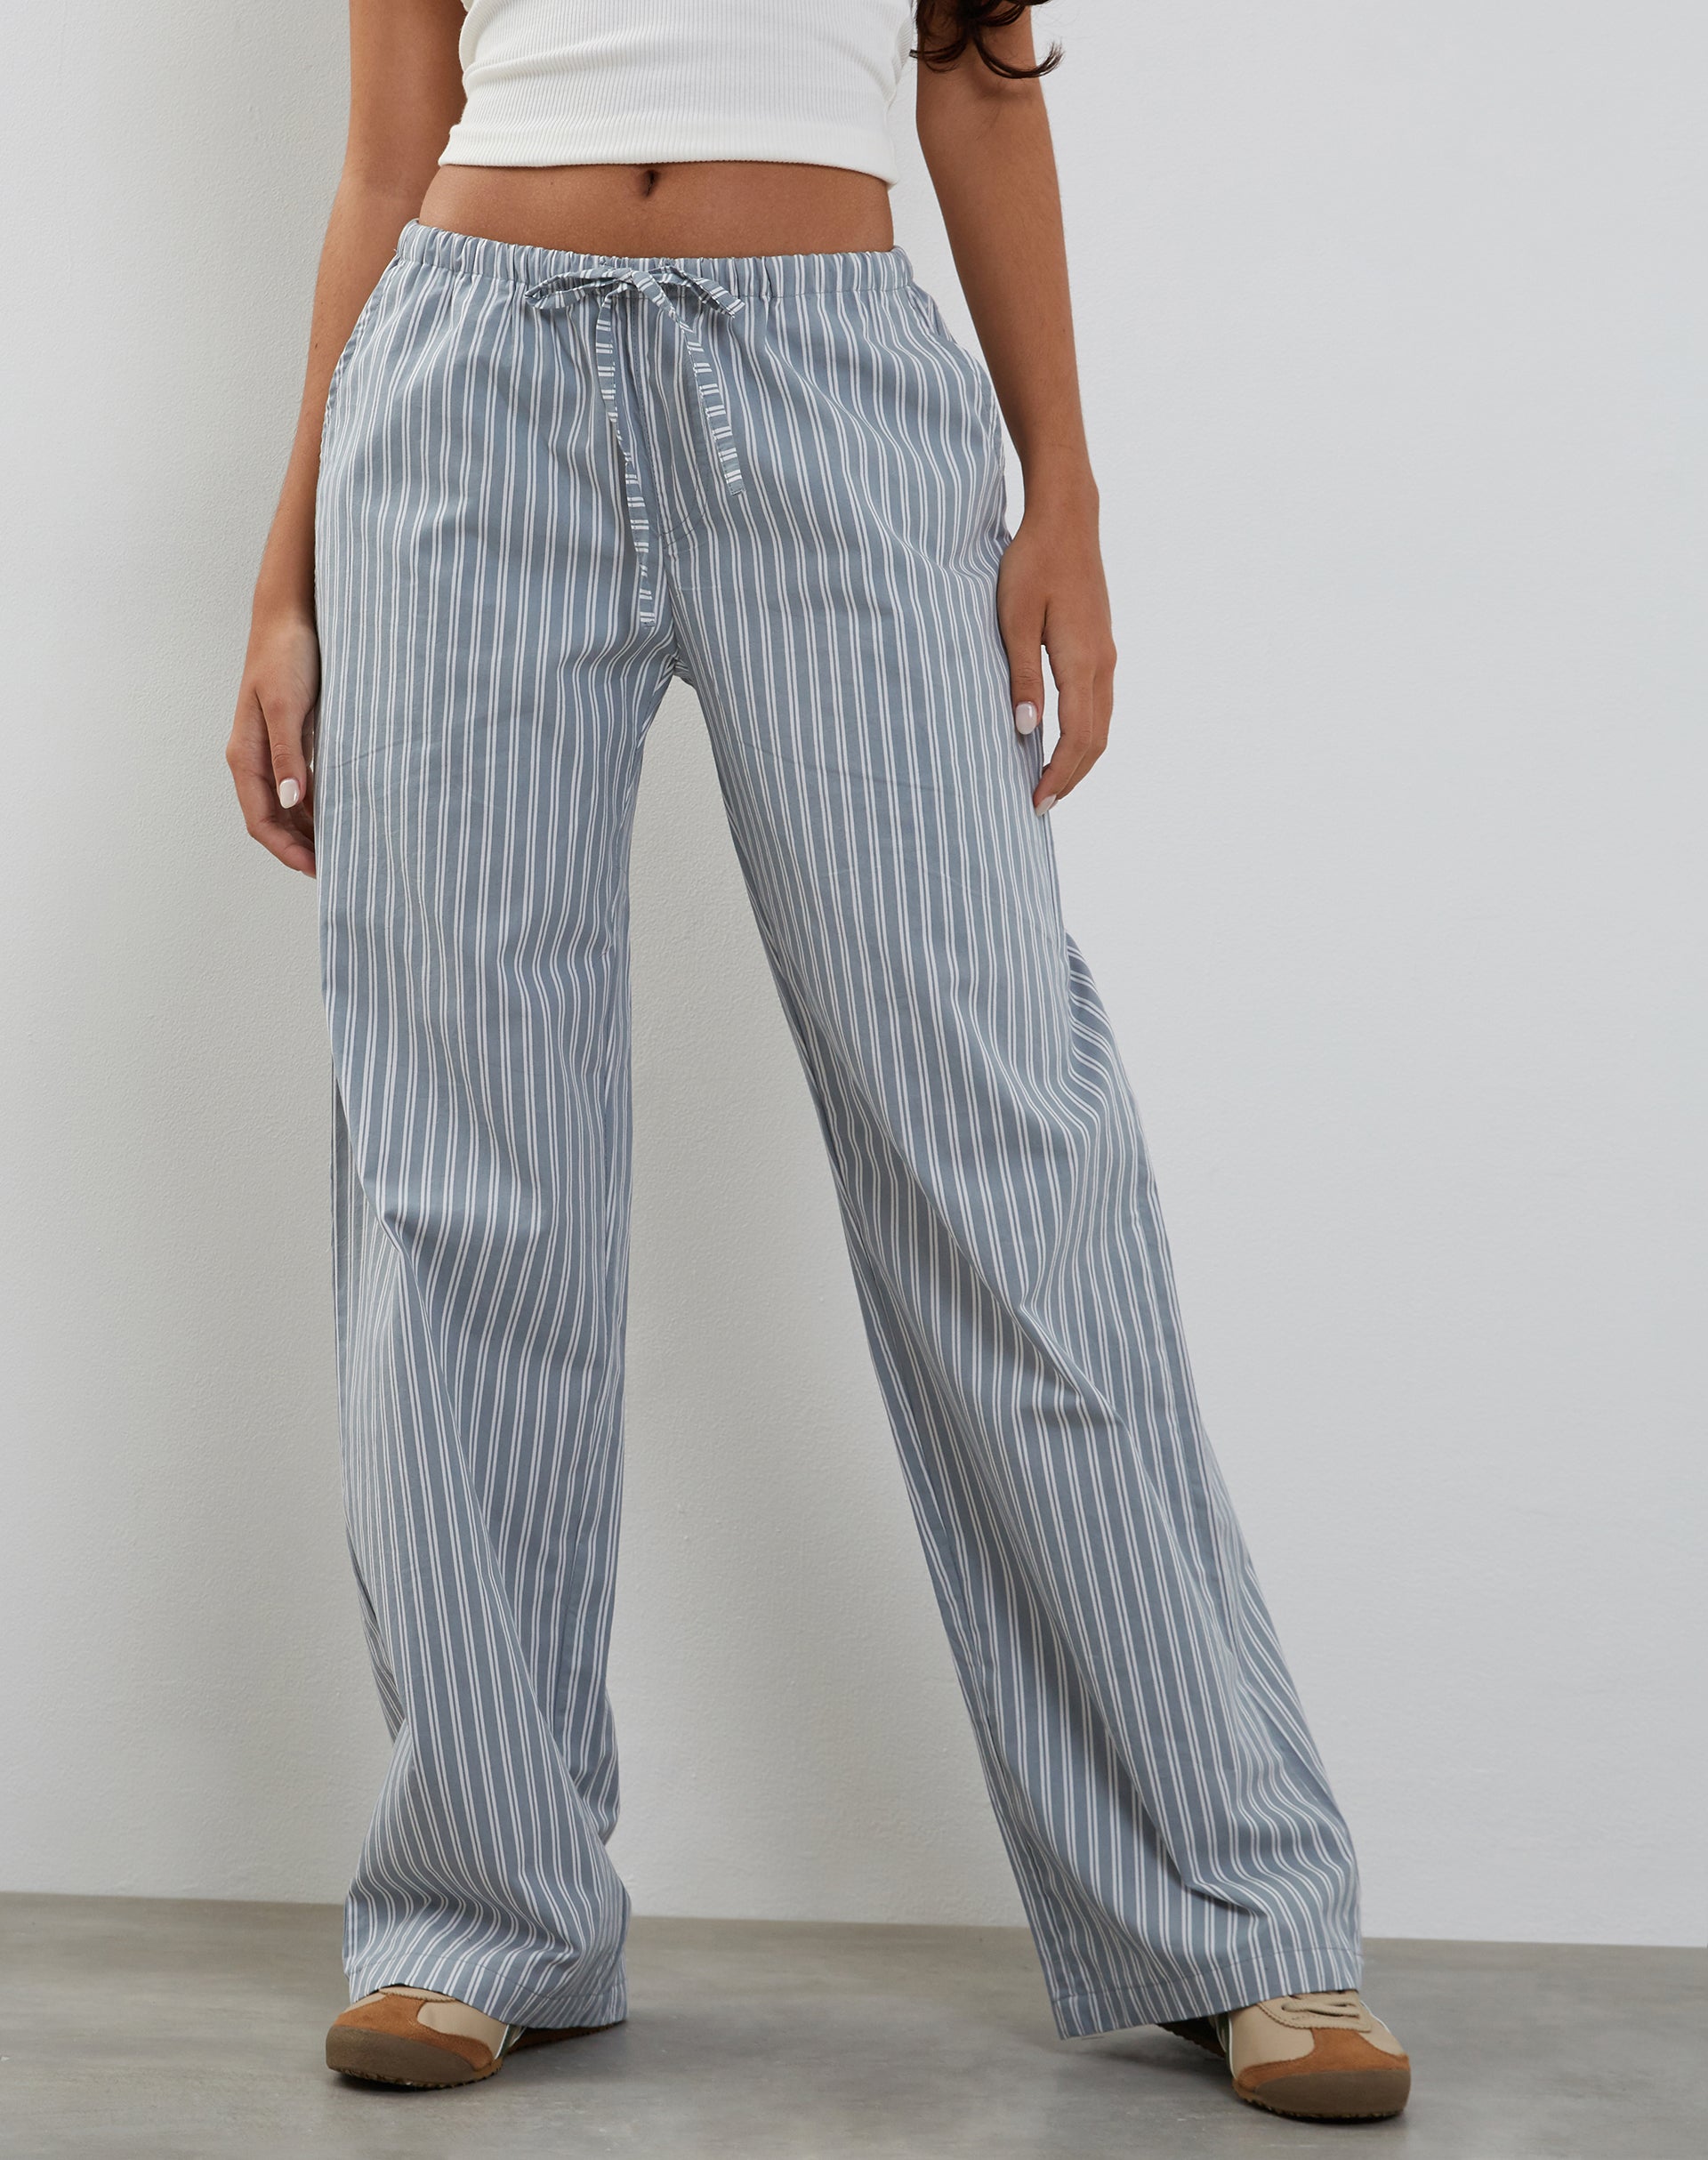 ASOS DESIGN striped wide leg trouser in light blue